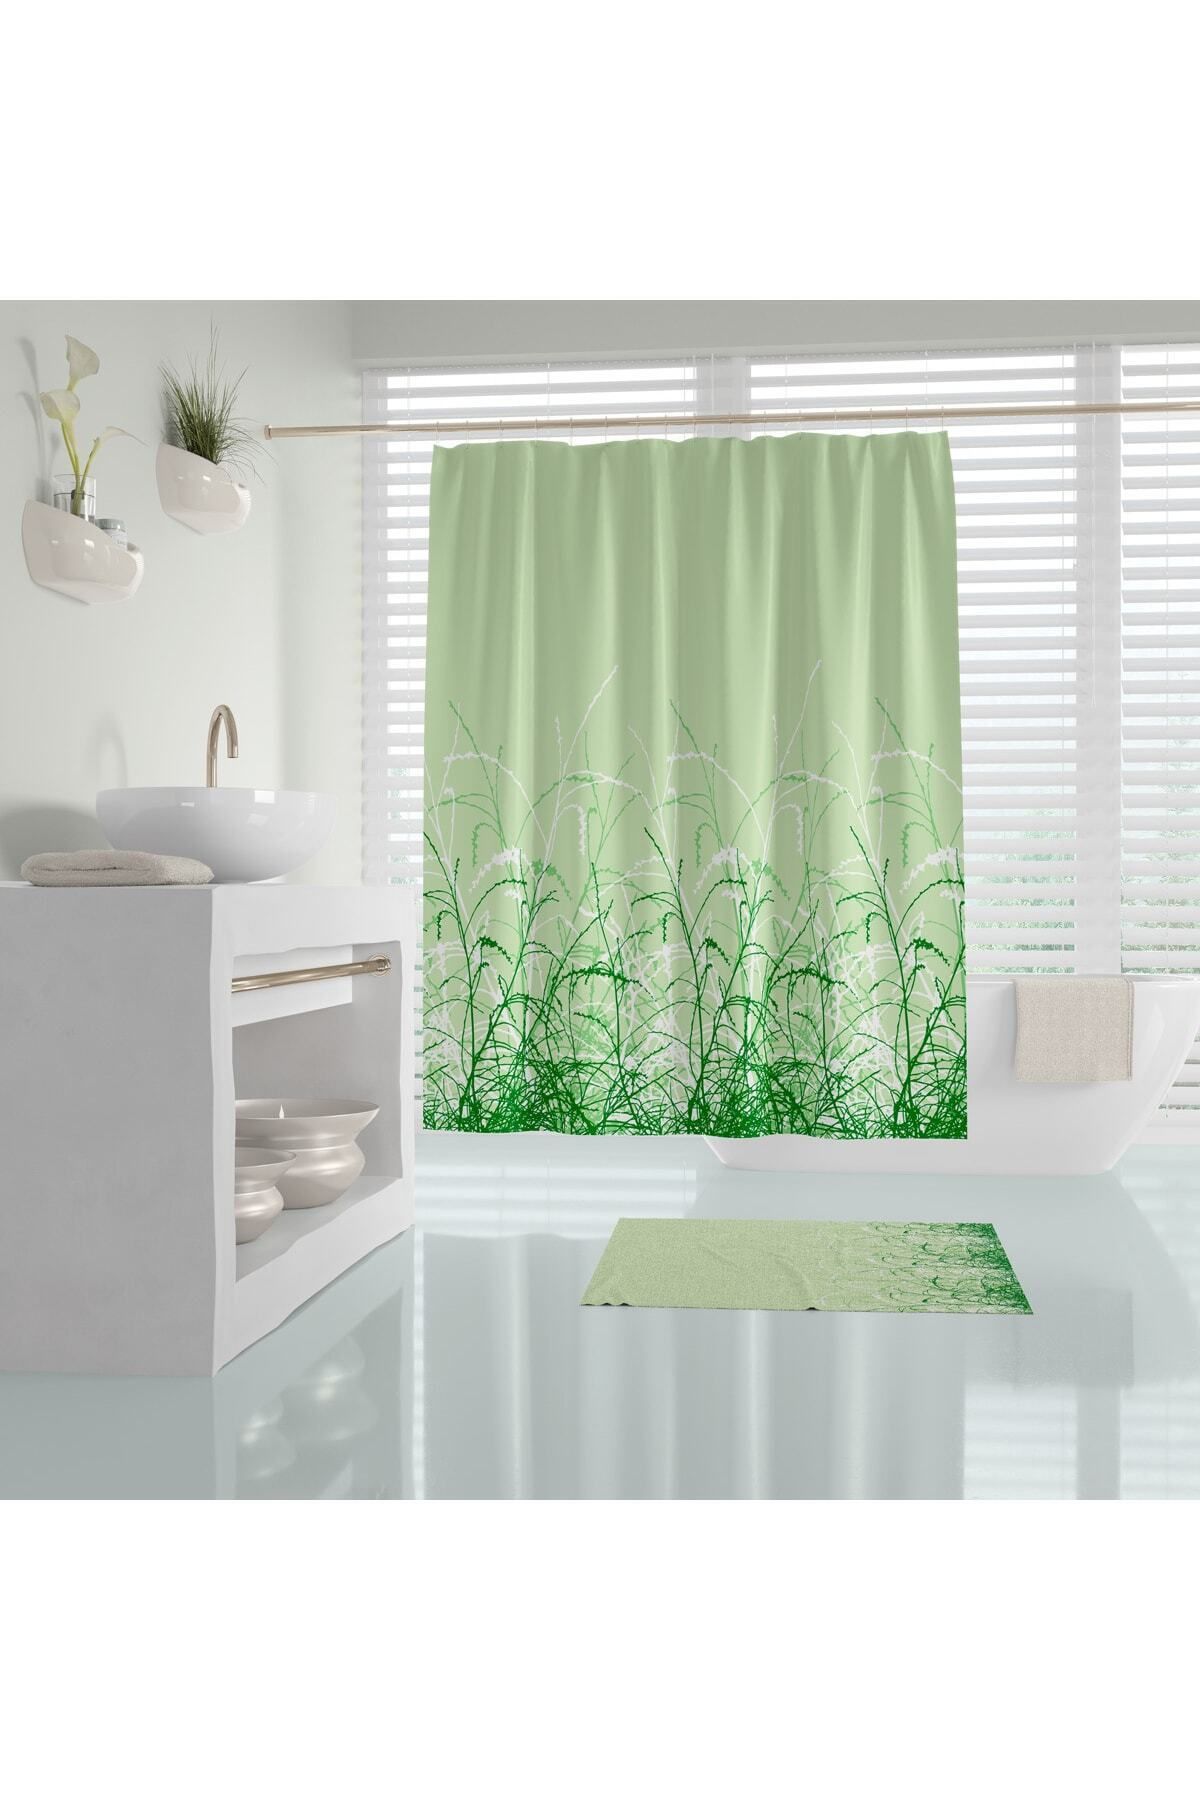 Tropikhome Yeşil Renk Duş Perdesi Dijital Baskılı 180x180banyo Perdesi Solmaz Duş Perde-su Geçirmez Banyo Perde